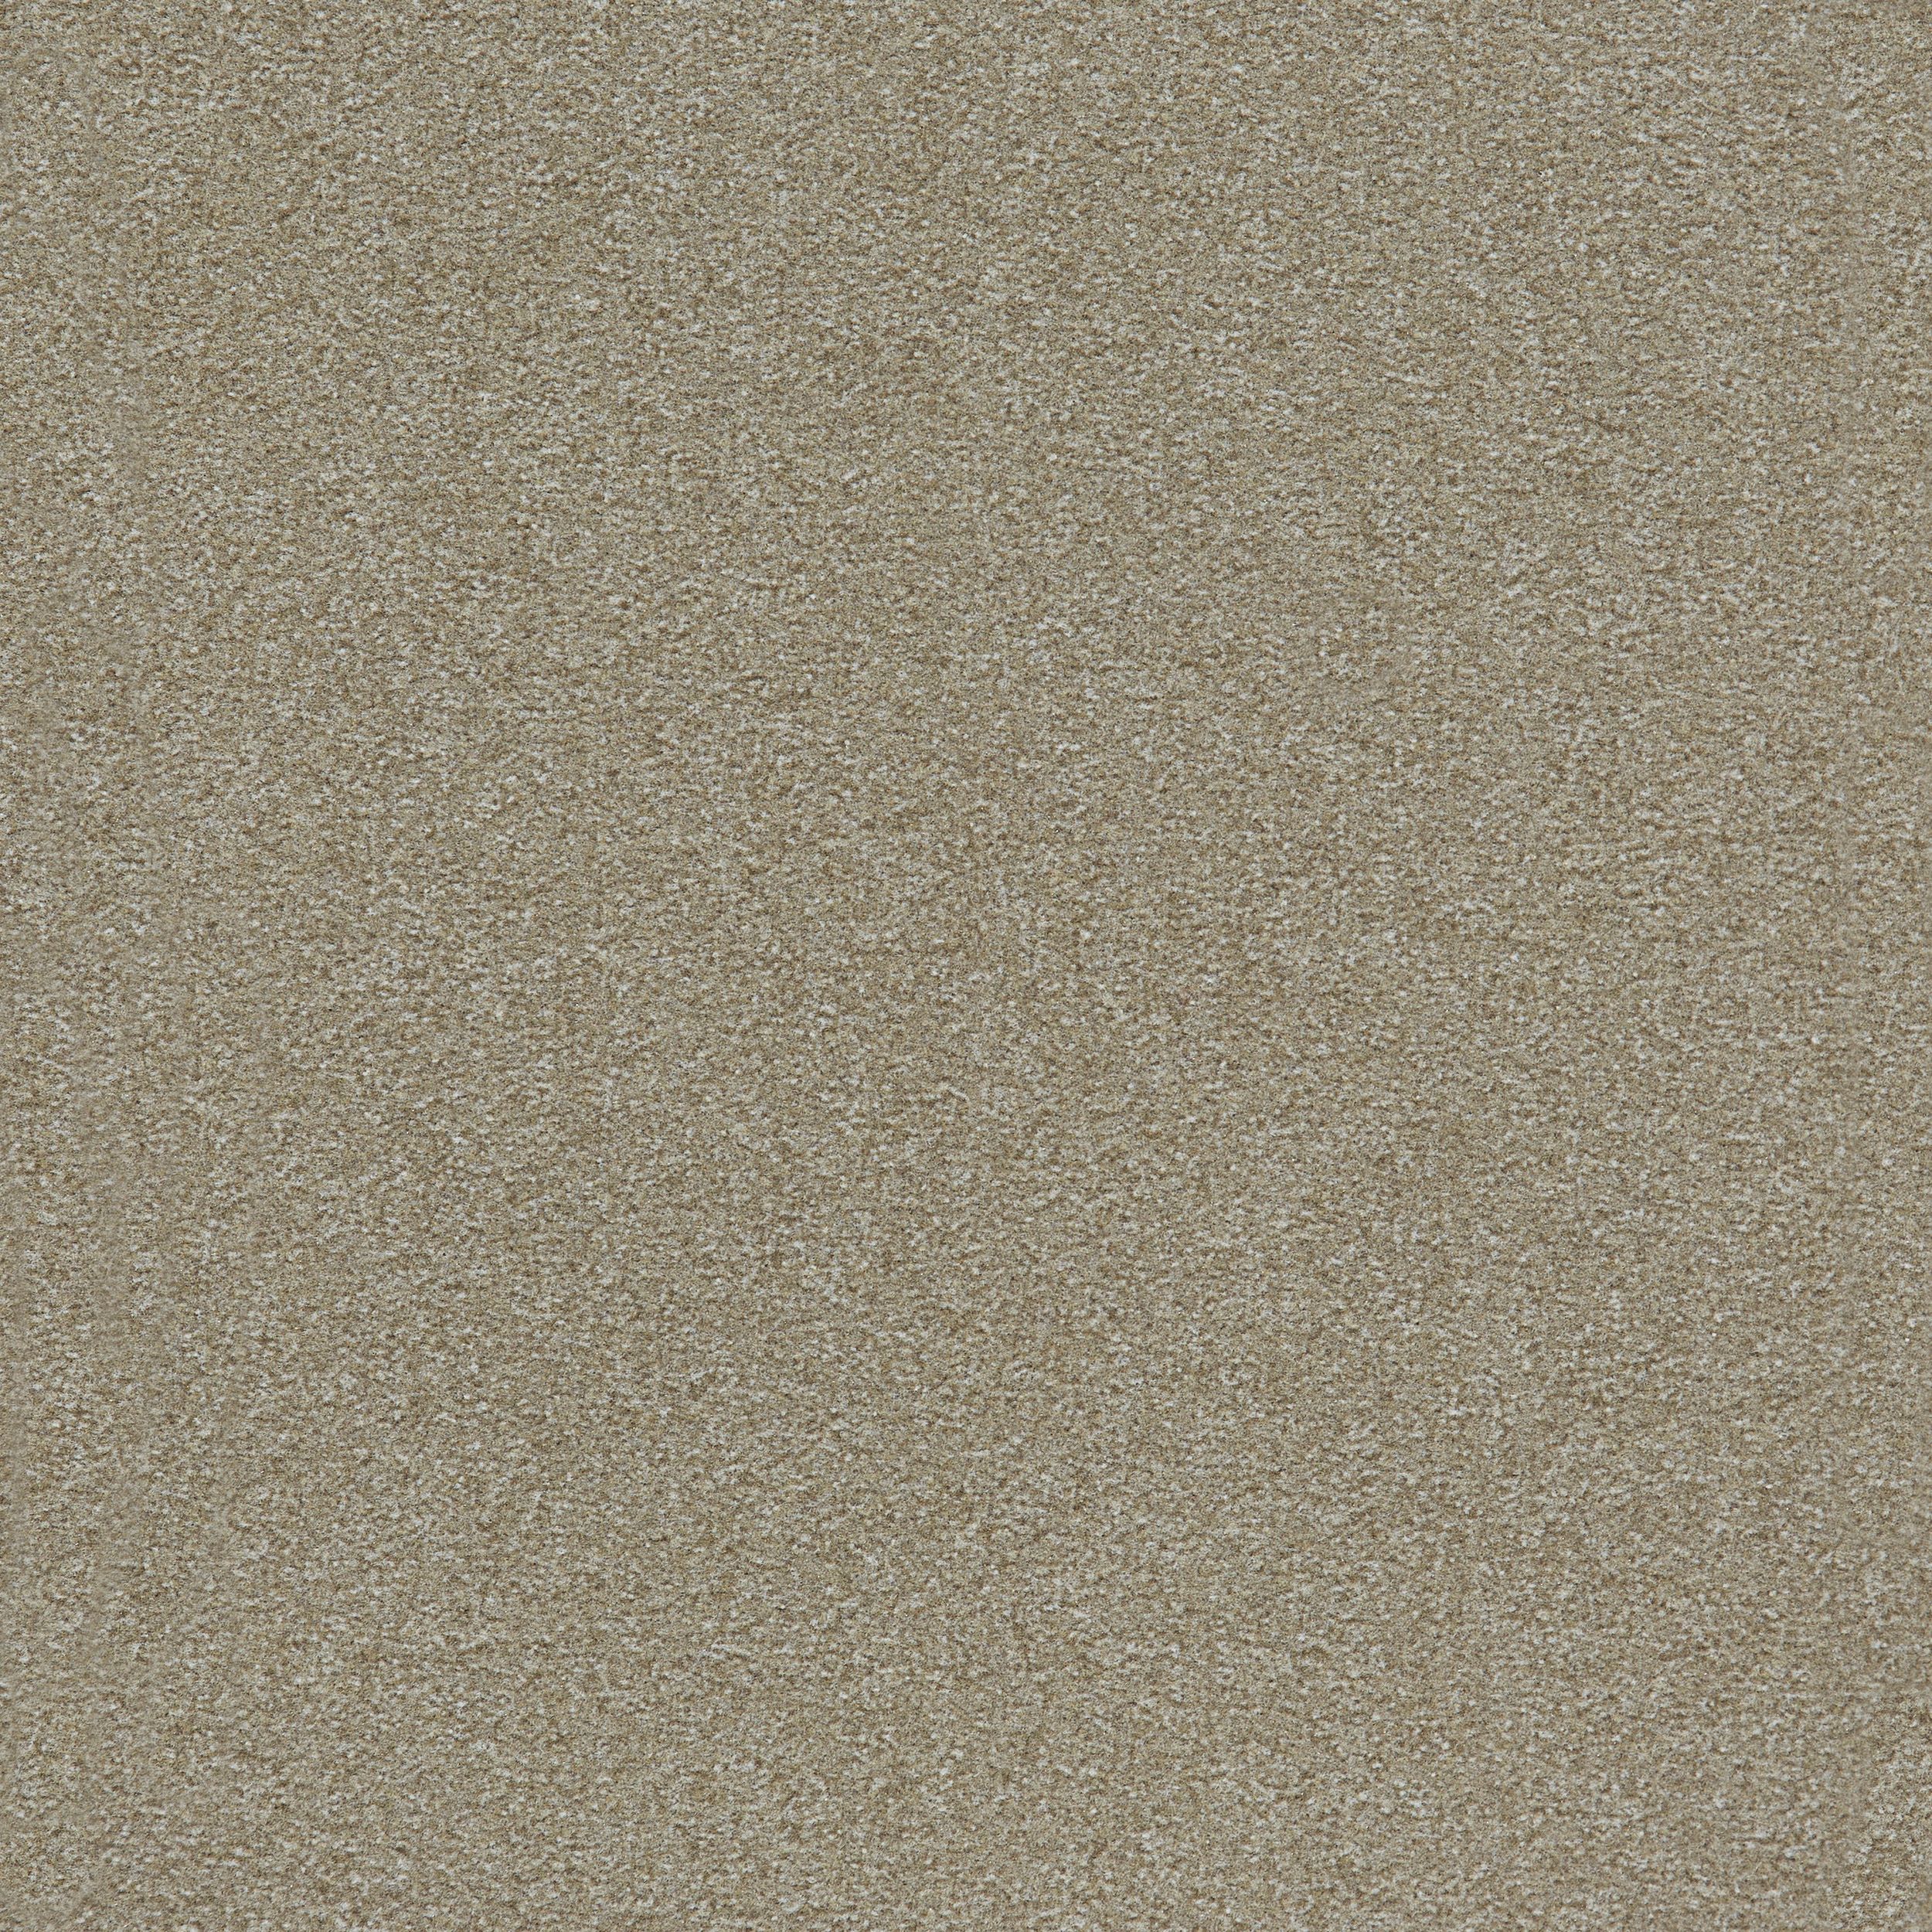 Heuga 725 Carpet Tile In Oyster número de imagen 3